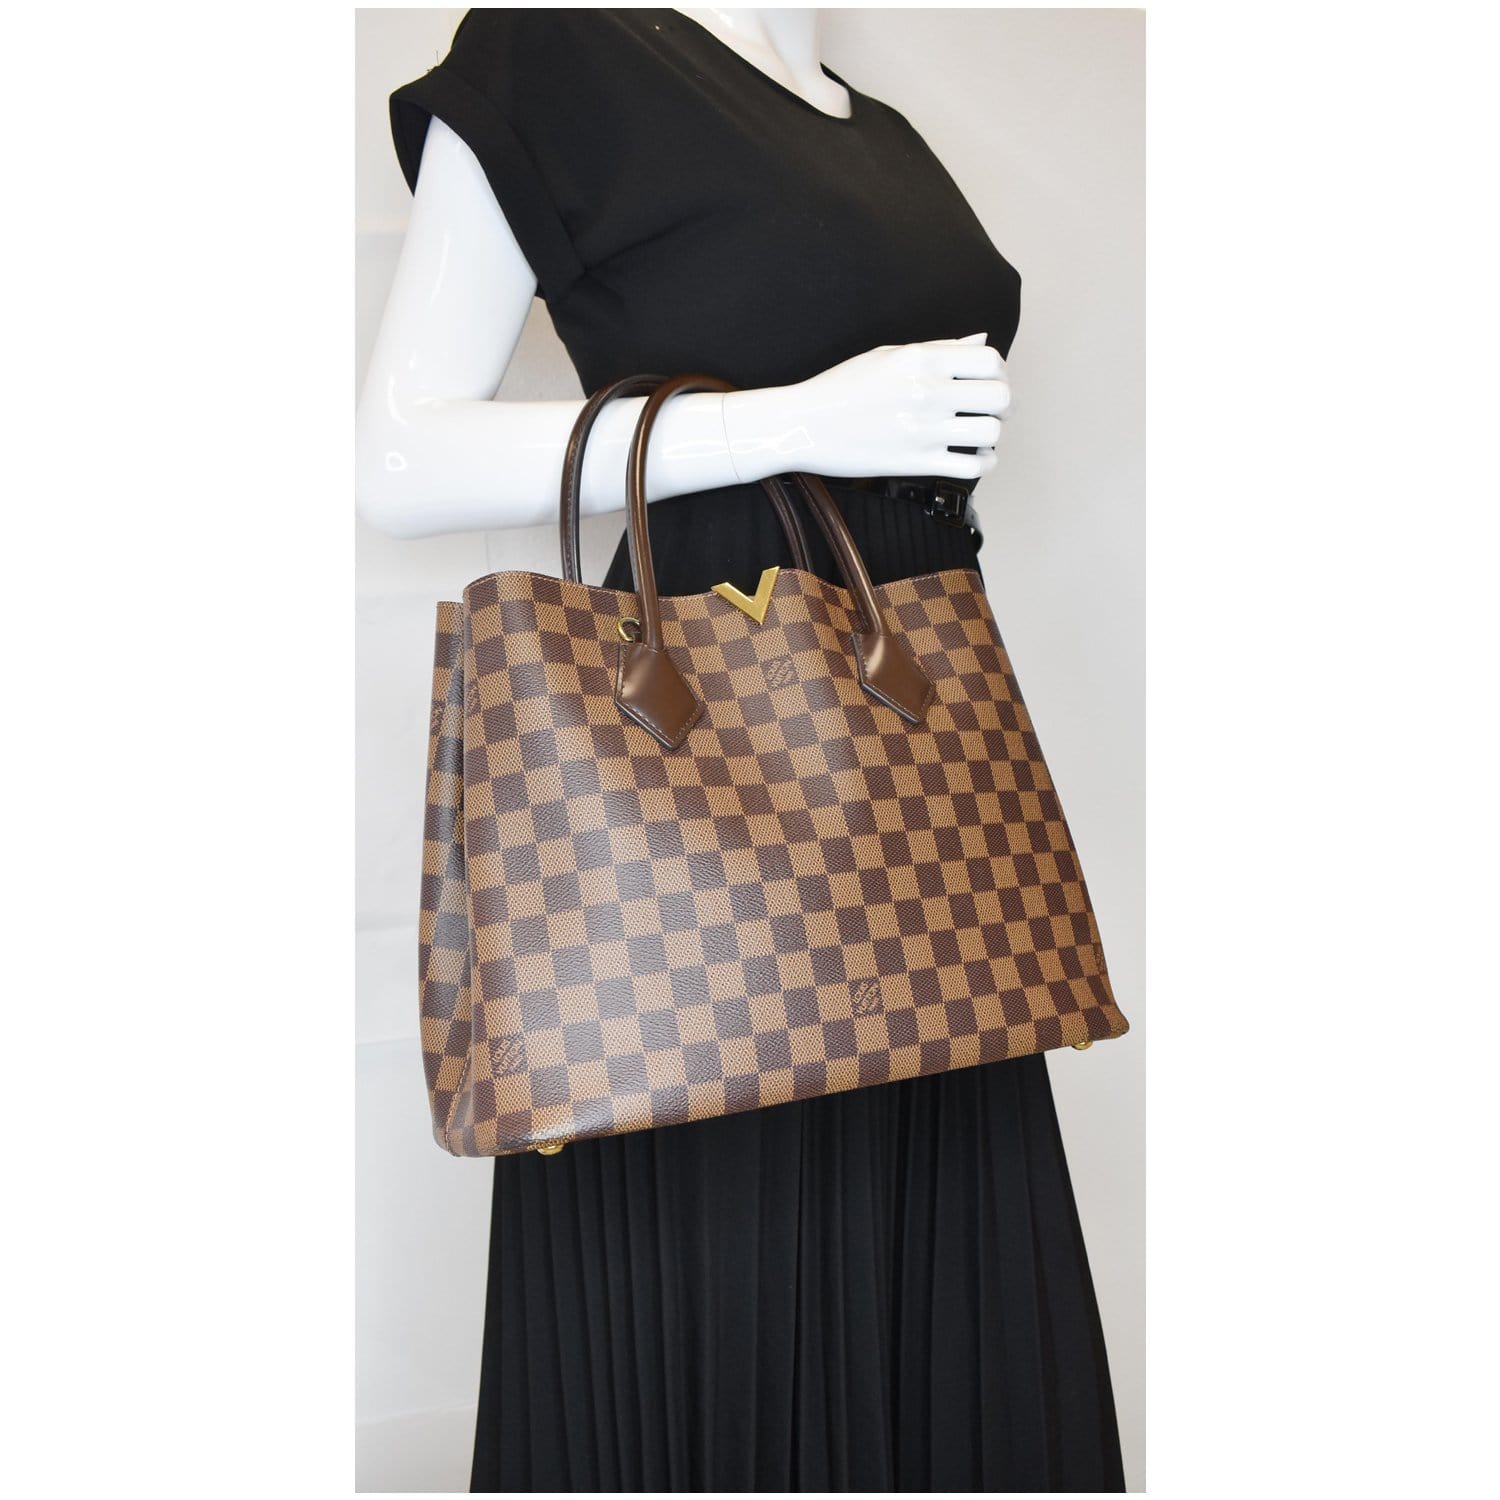 Authentic Louis Vuitton Damier Ebene Kensington Tote/Shoulder Bag